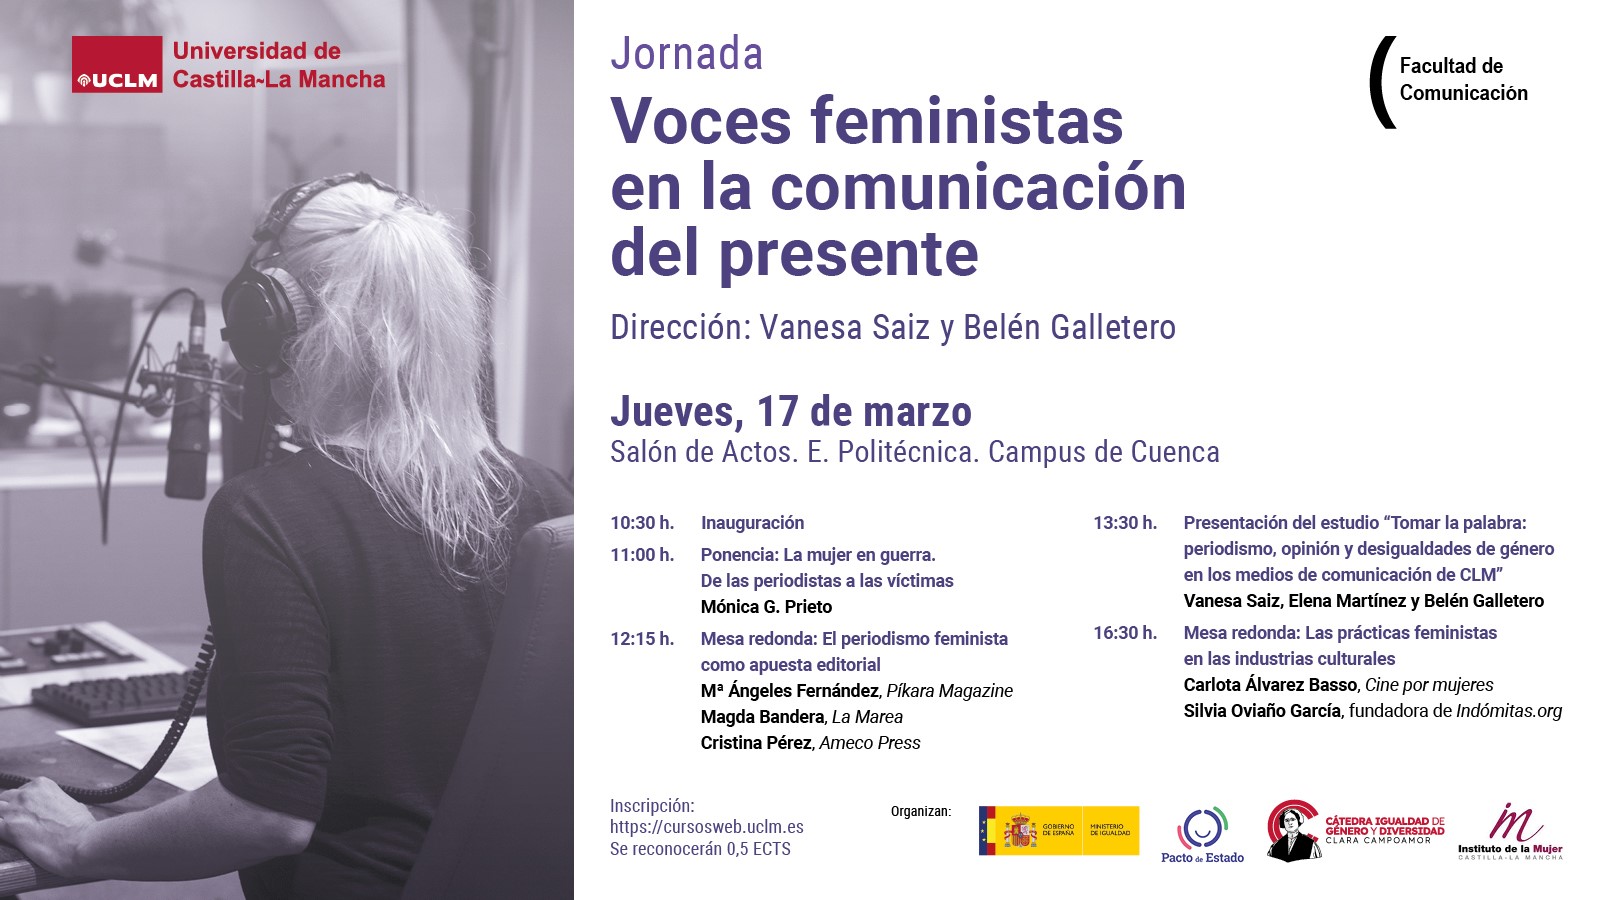 Jornada “Voces feministas en la comunicación del presente”